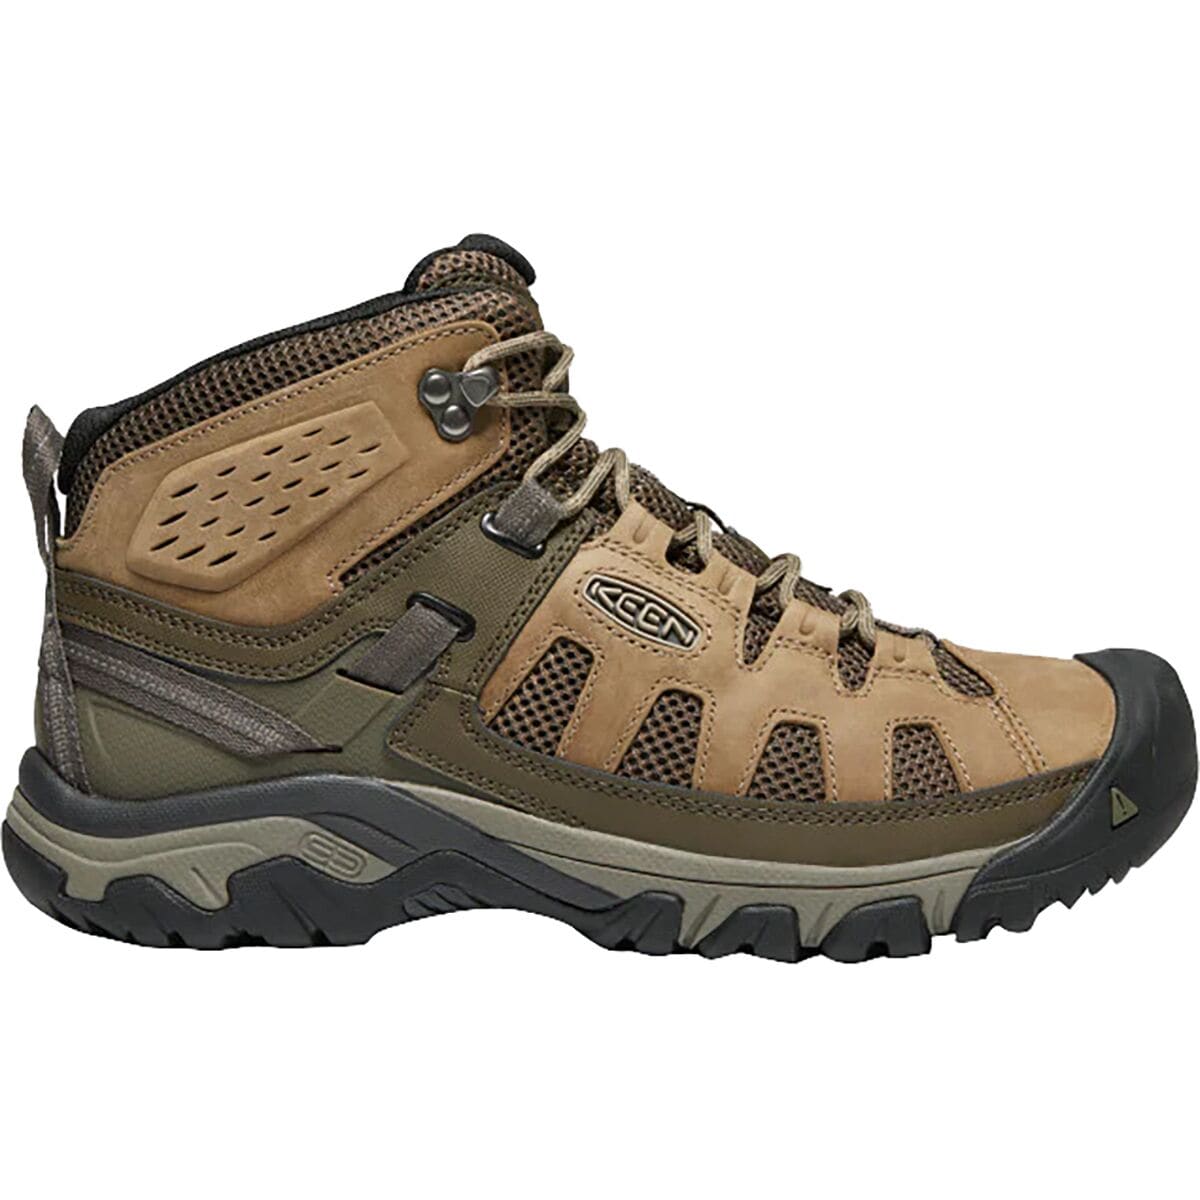 KEEN Targhee Vent Mid Hiking Boot - Men's